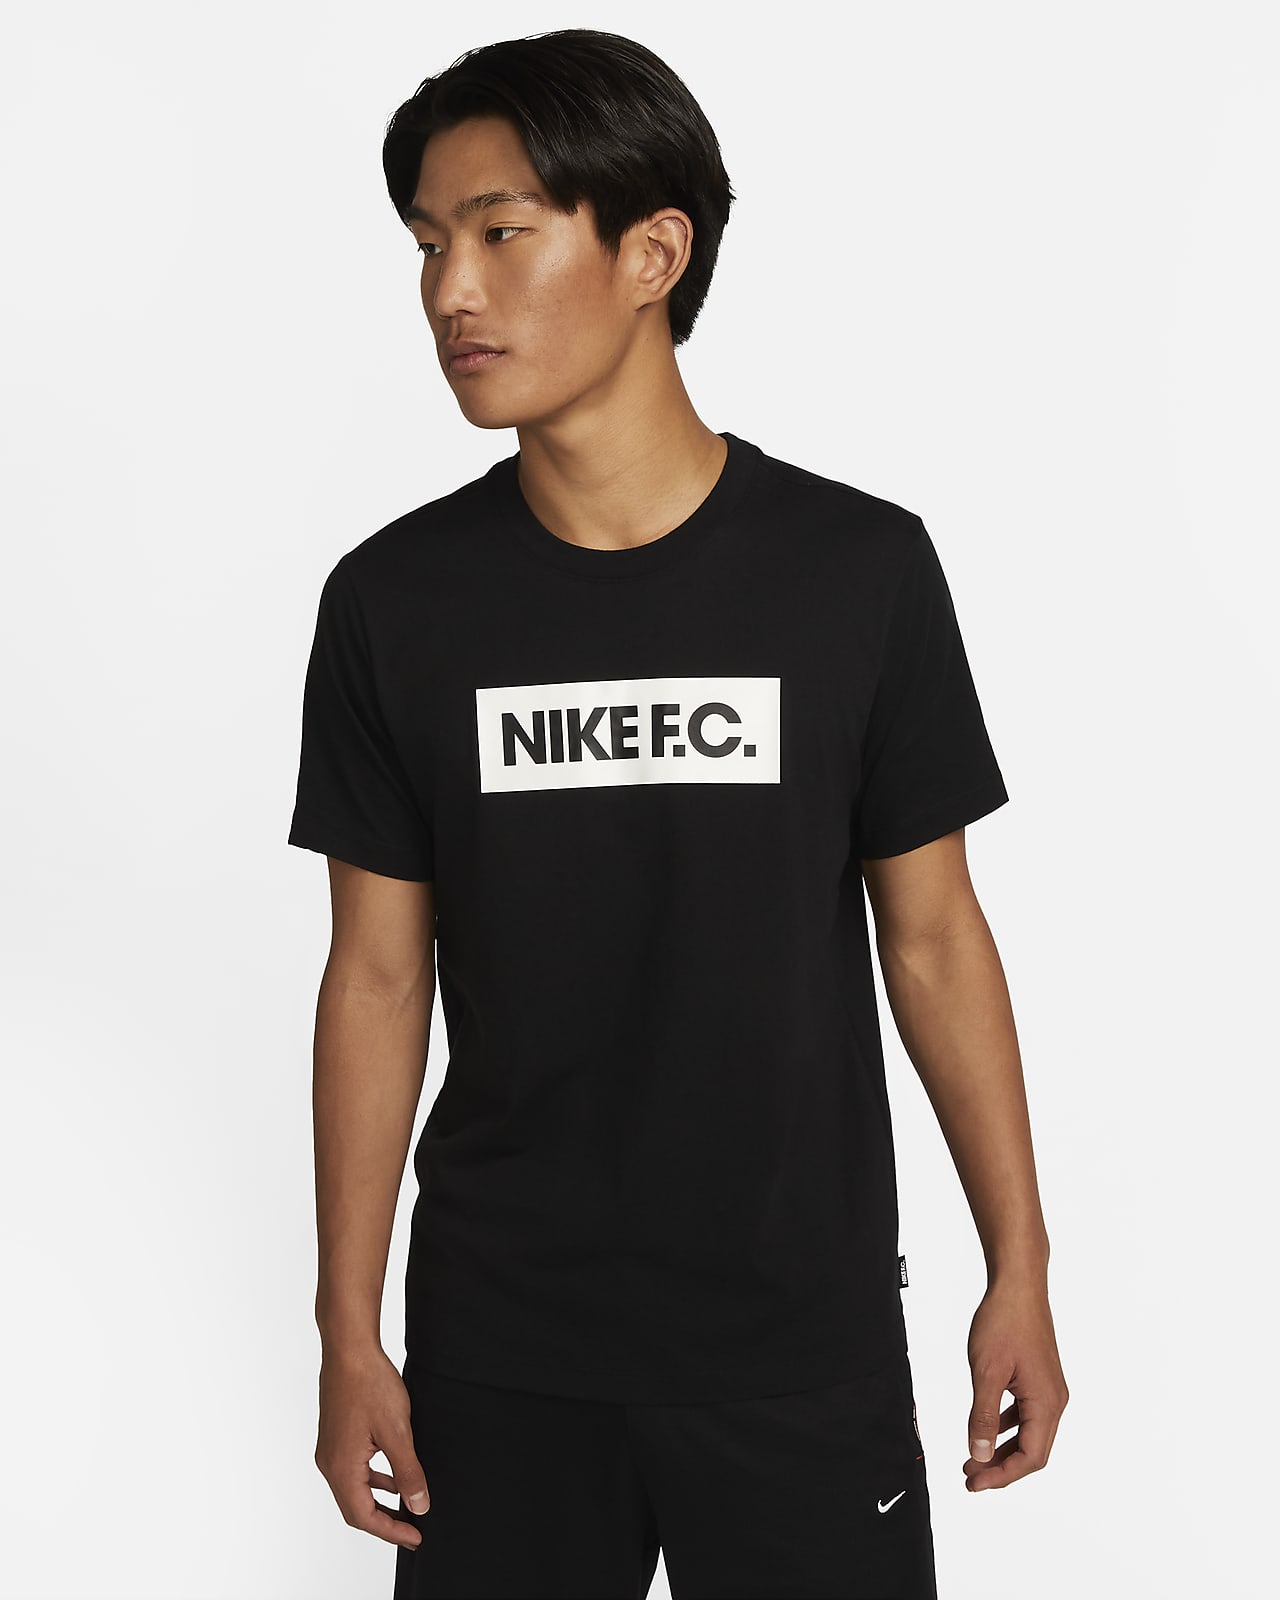 NIKE公式】ナイキ F.C. メンズ サッカー Tシャツ.オンラインストア (通販サイト)